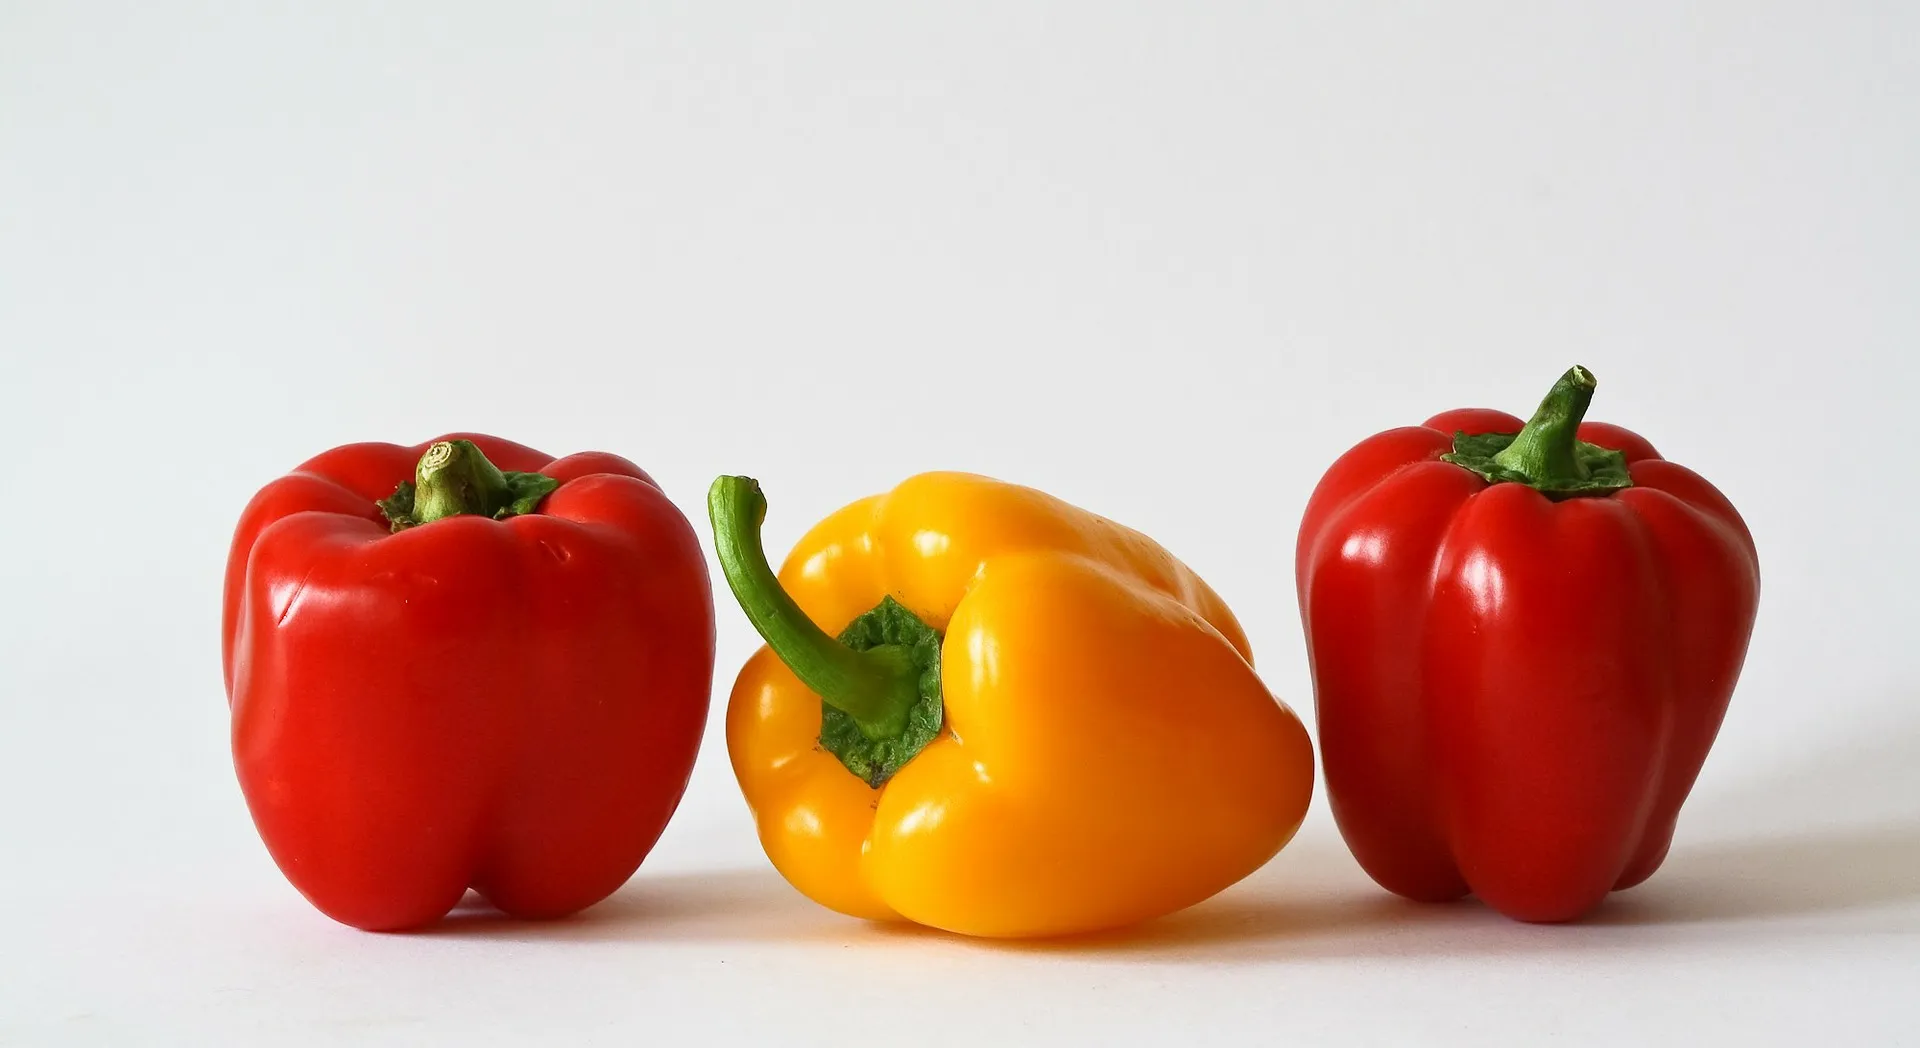 Mangiare peperoni crudi: ecco cosa può accadere 